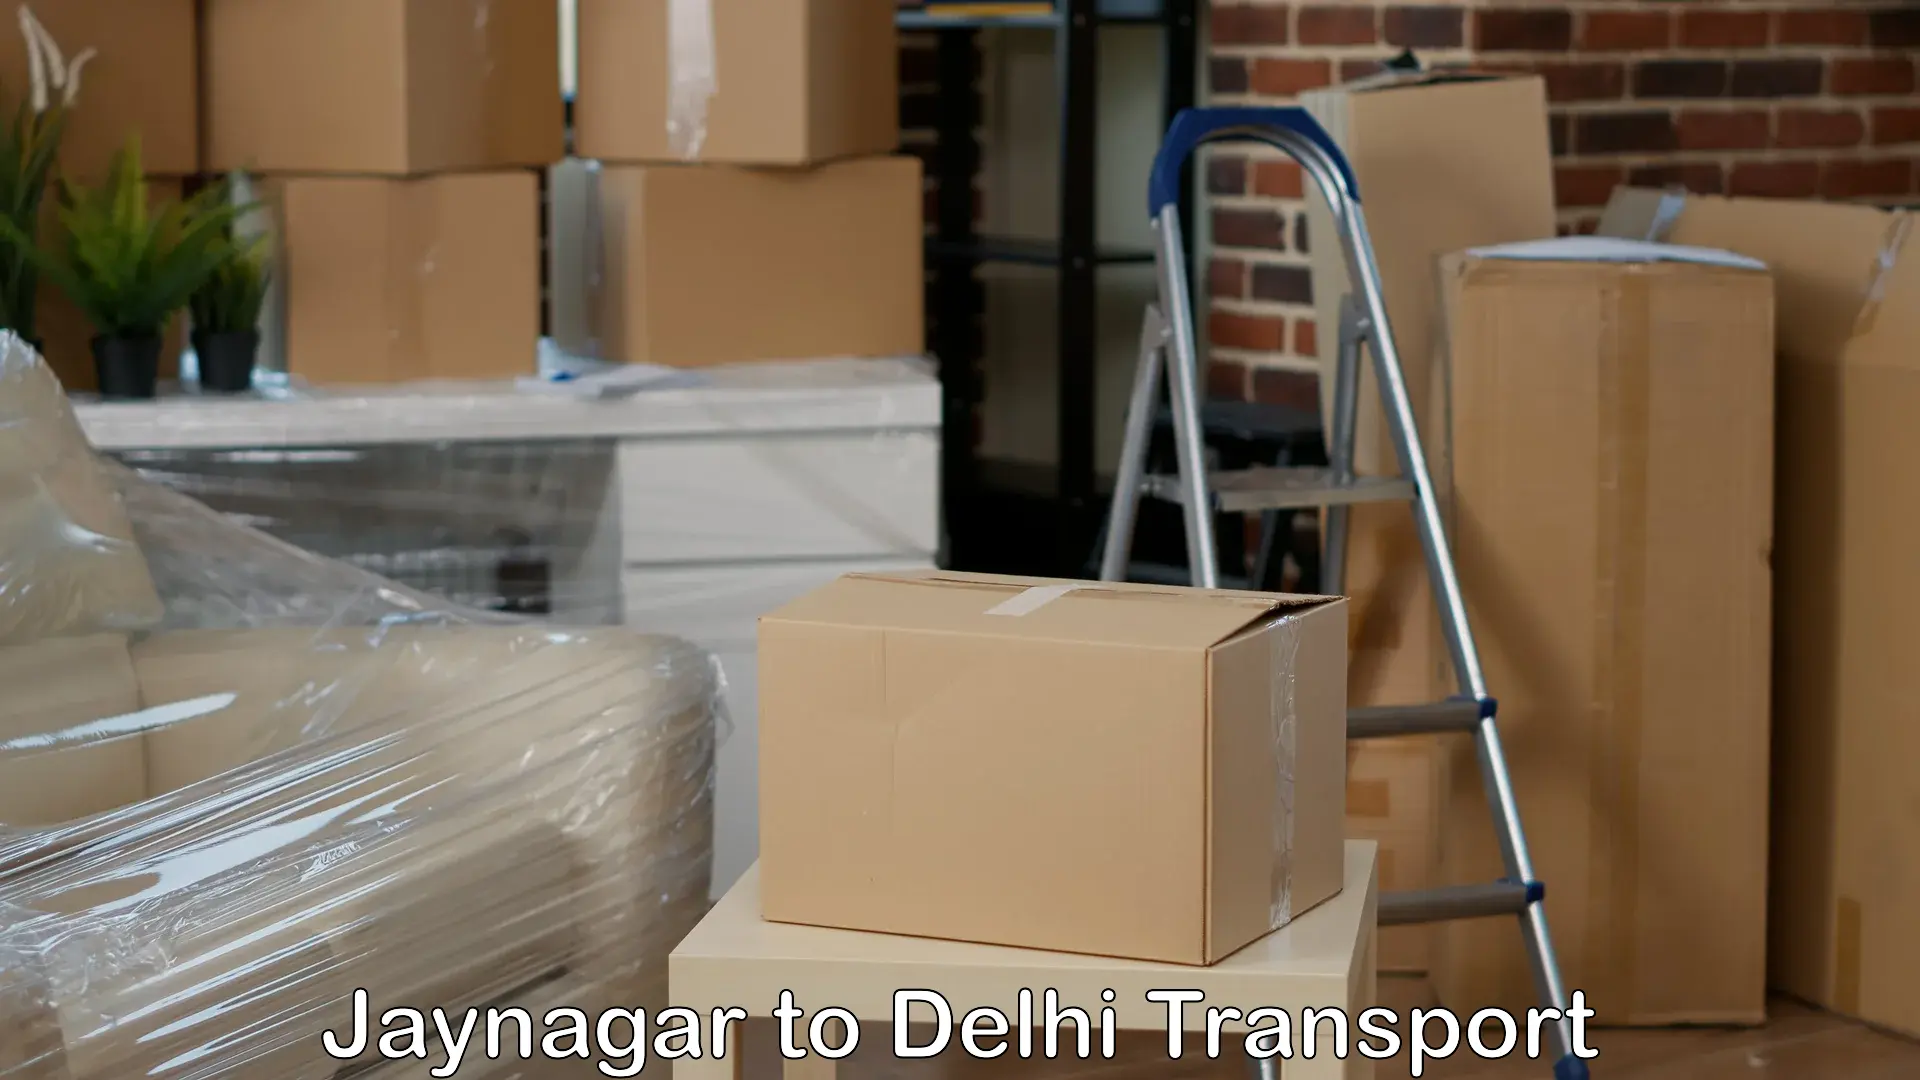 Air freight transport services Jaynagar to Ramesh Nagar